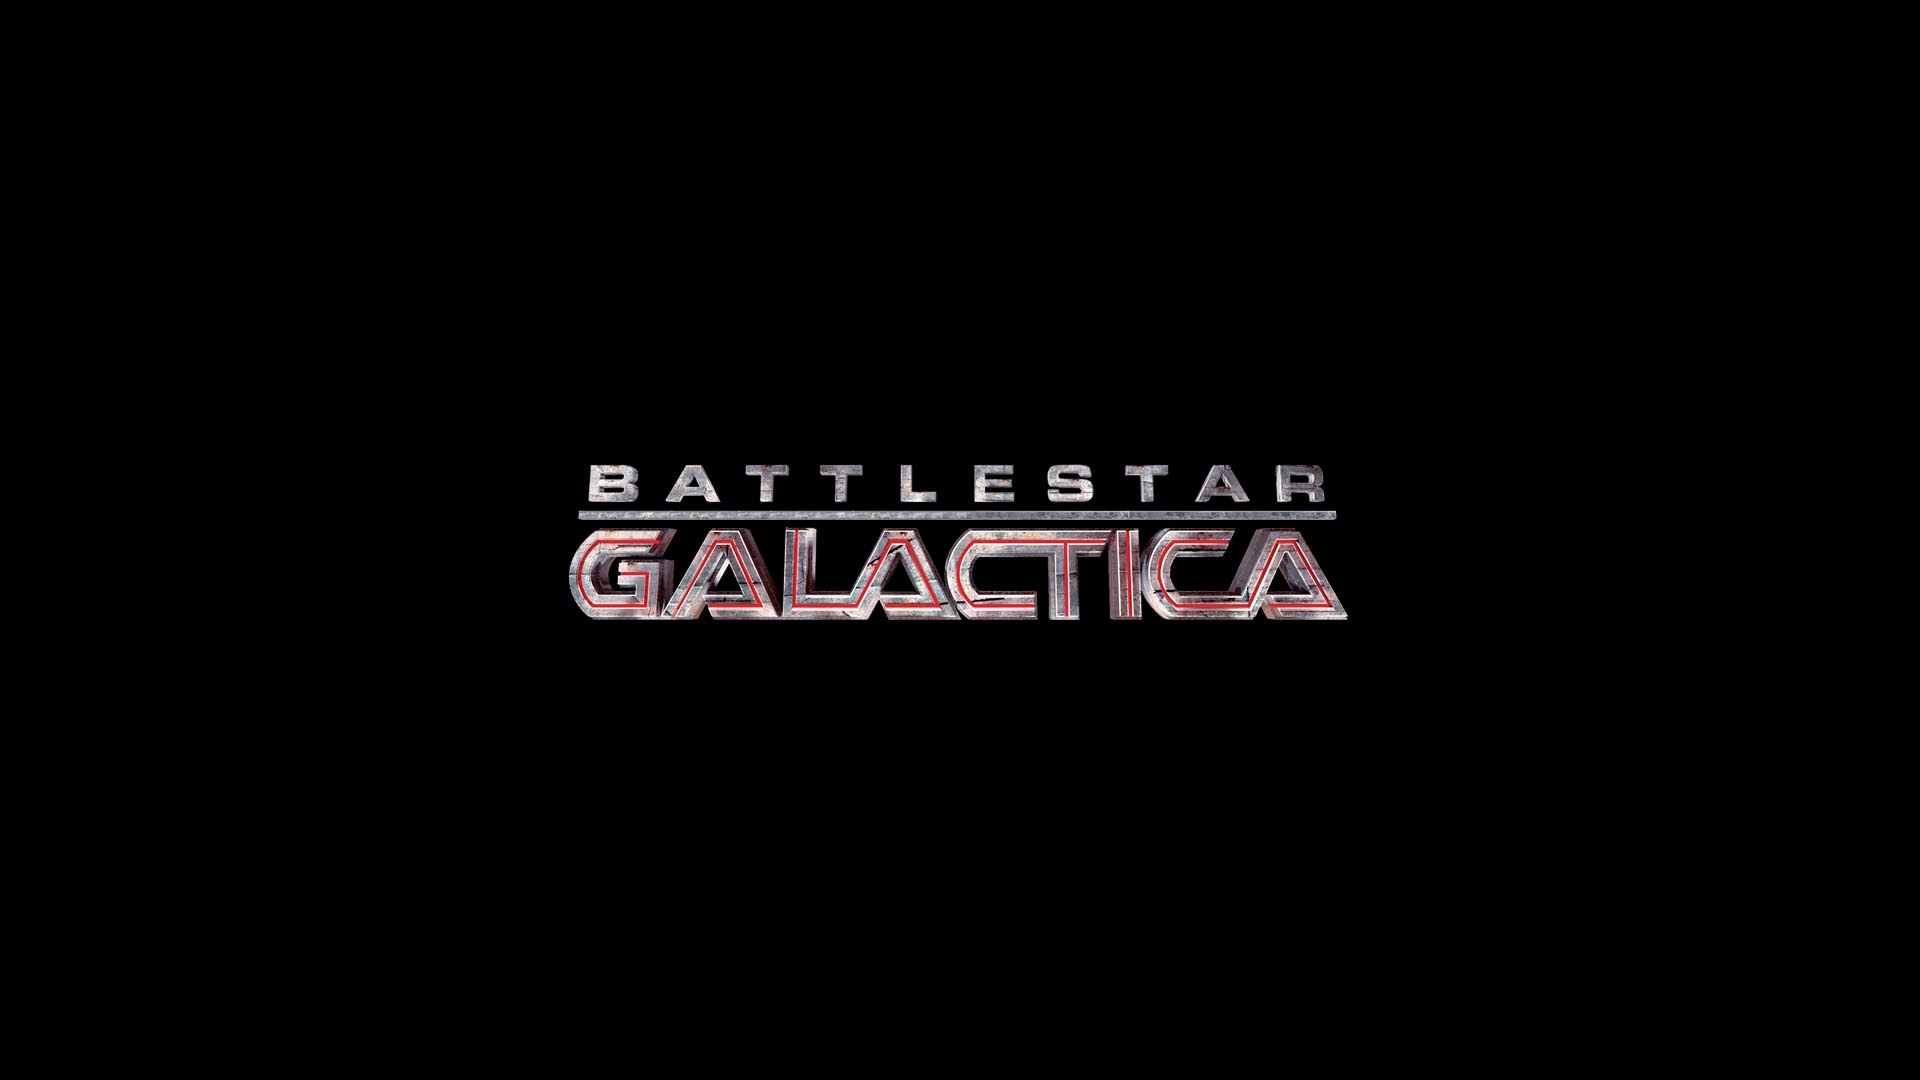 Battlestar Galactica Widescreen Wallpaper